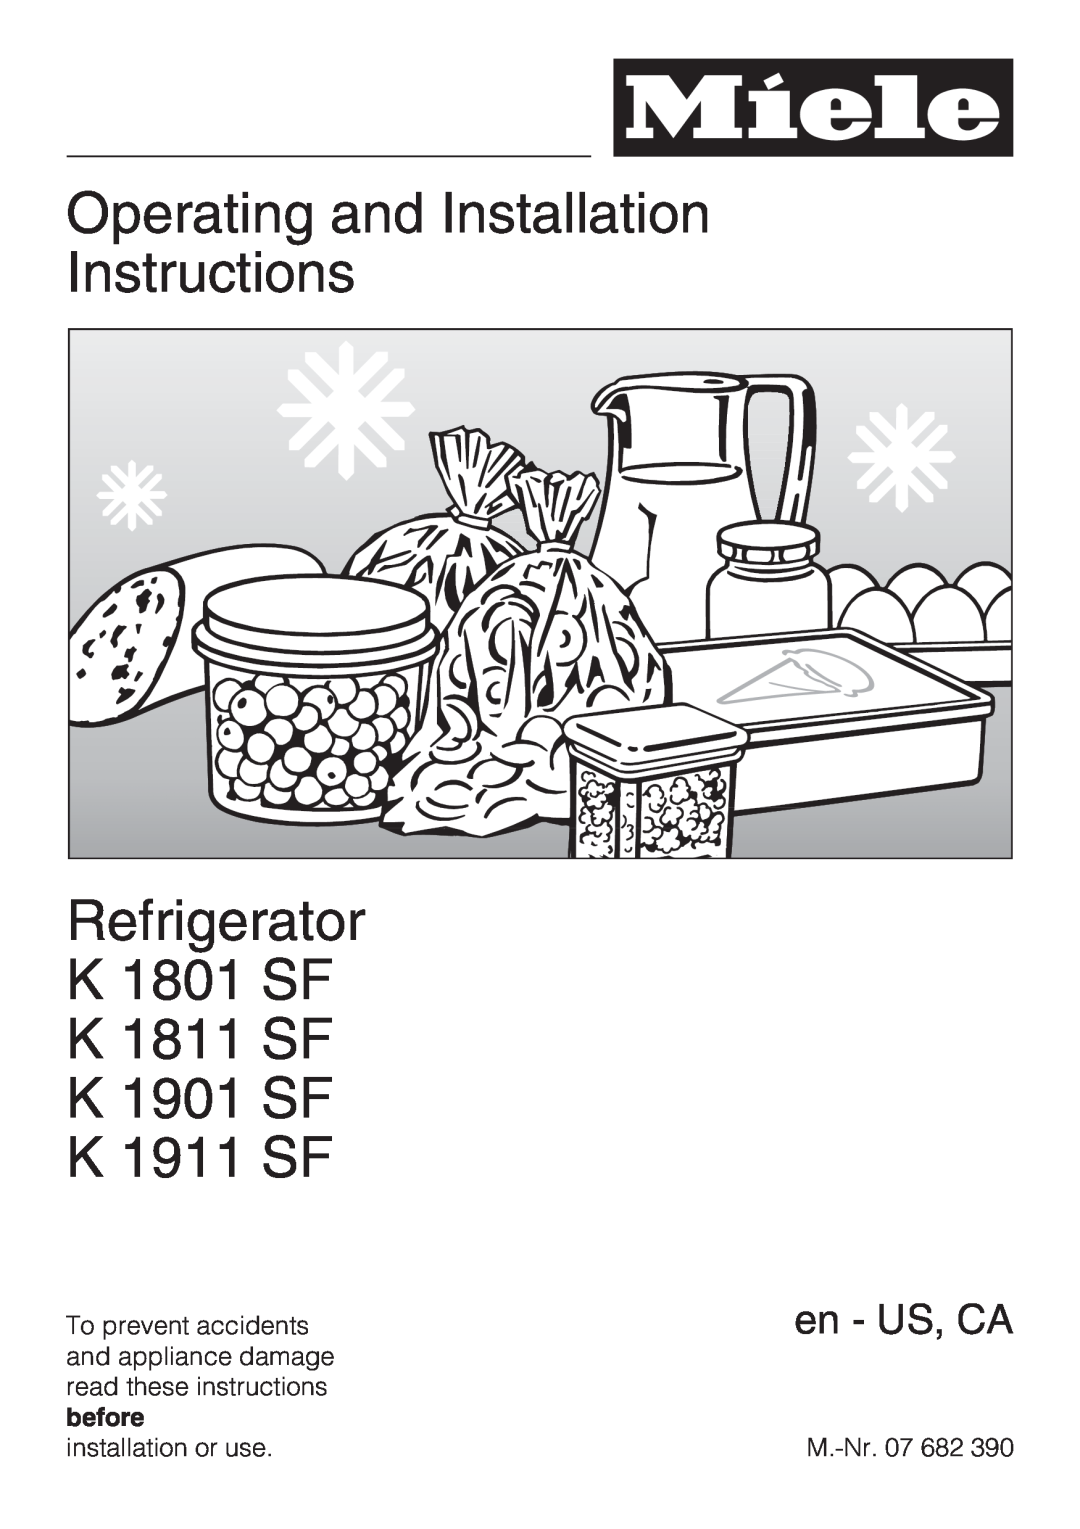 Miele K1901SF, K1801SF, K1911SF installation instructions Operating and Installation Instructions, K 1911 SF, en - US, CA 